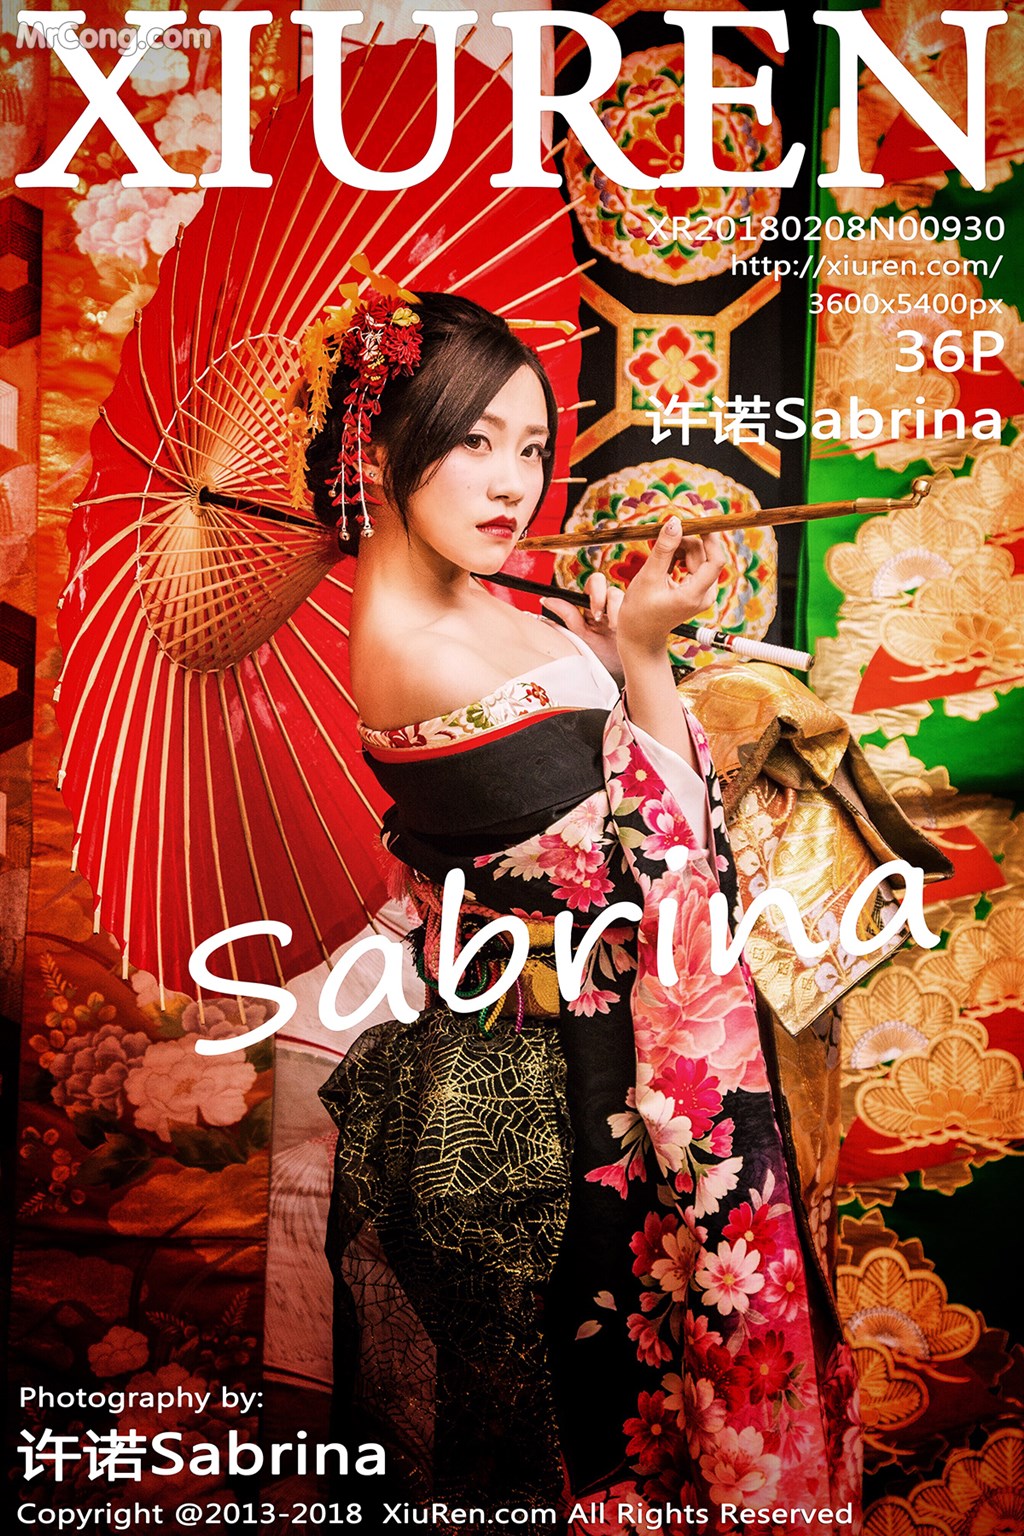 XIUREN No. 930: Model Sabrina (许诺) (37 photos)